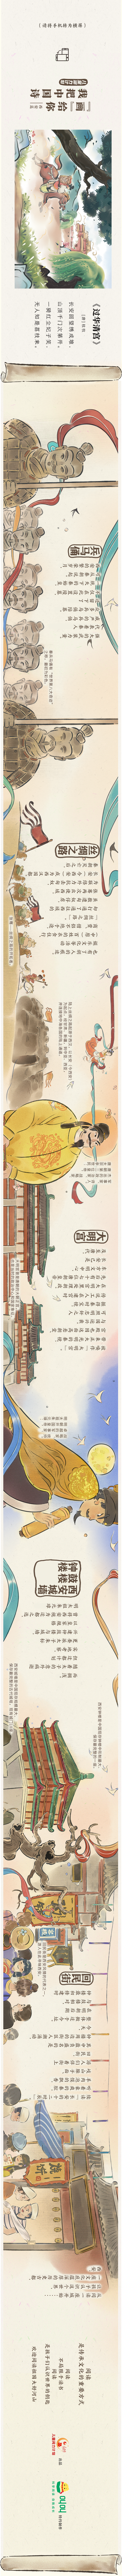 儿童阅力计划 | 我把中国诗“画”给你――阅读西安